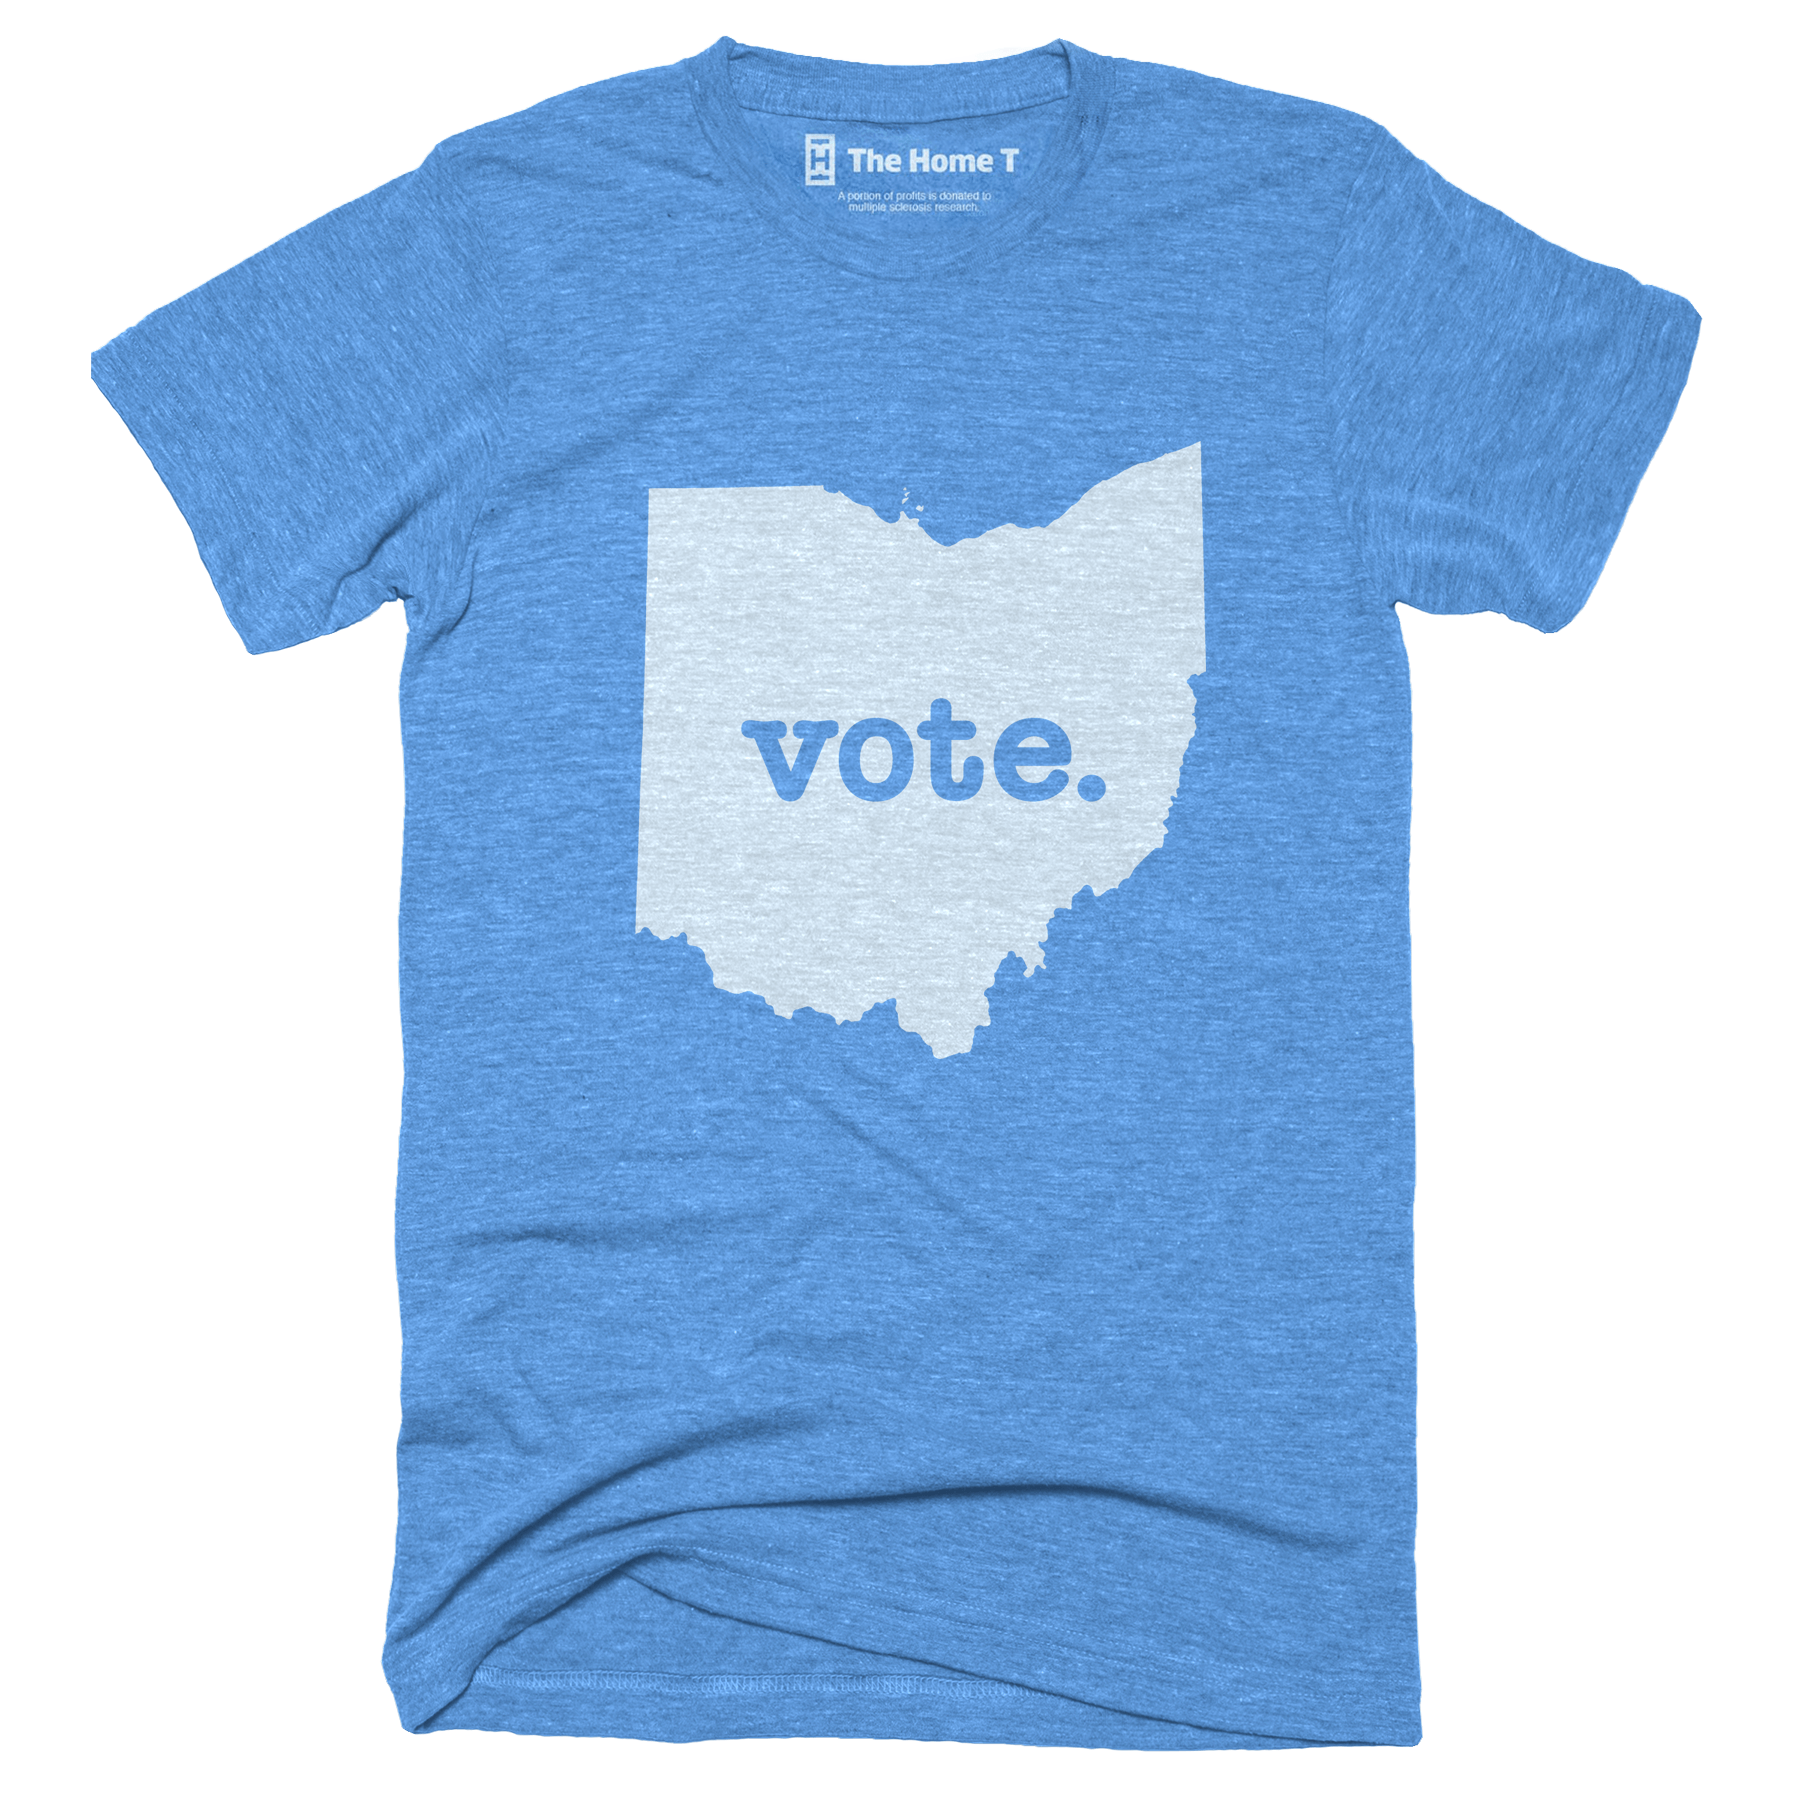 Ohio Vote Home T Vote The Home T XS Blue